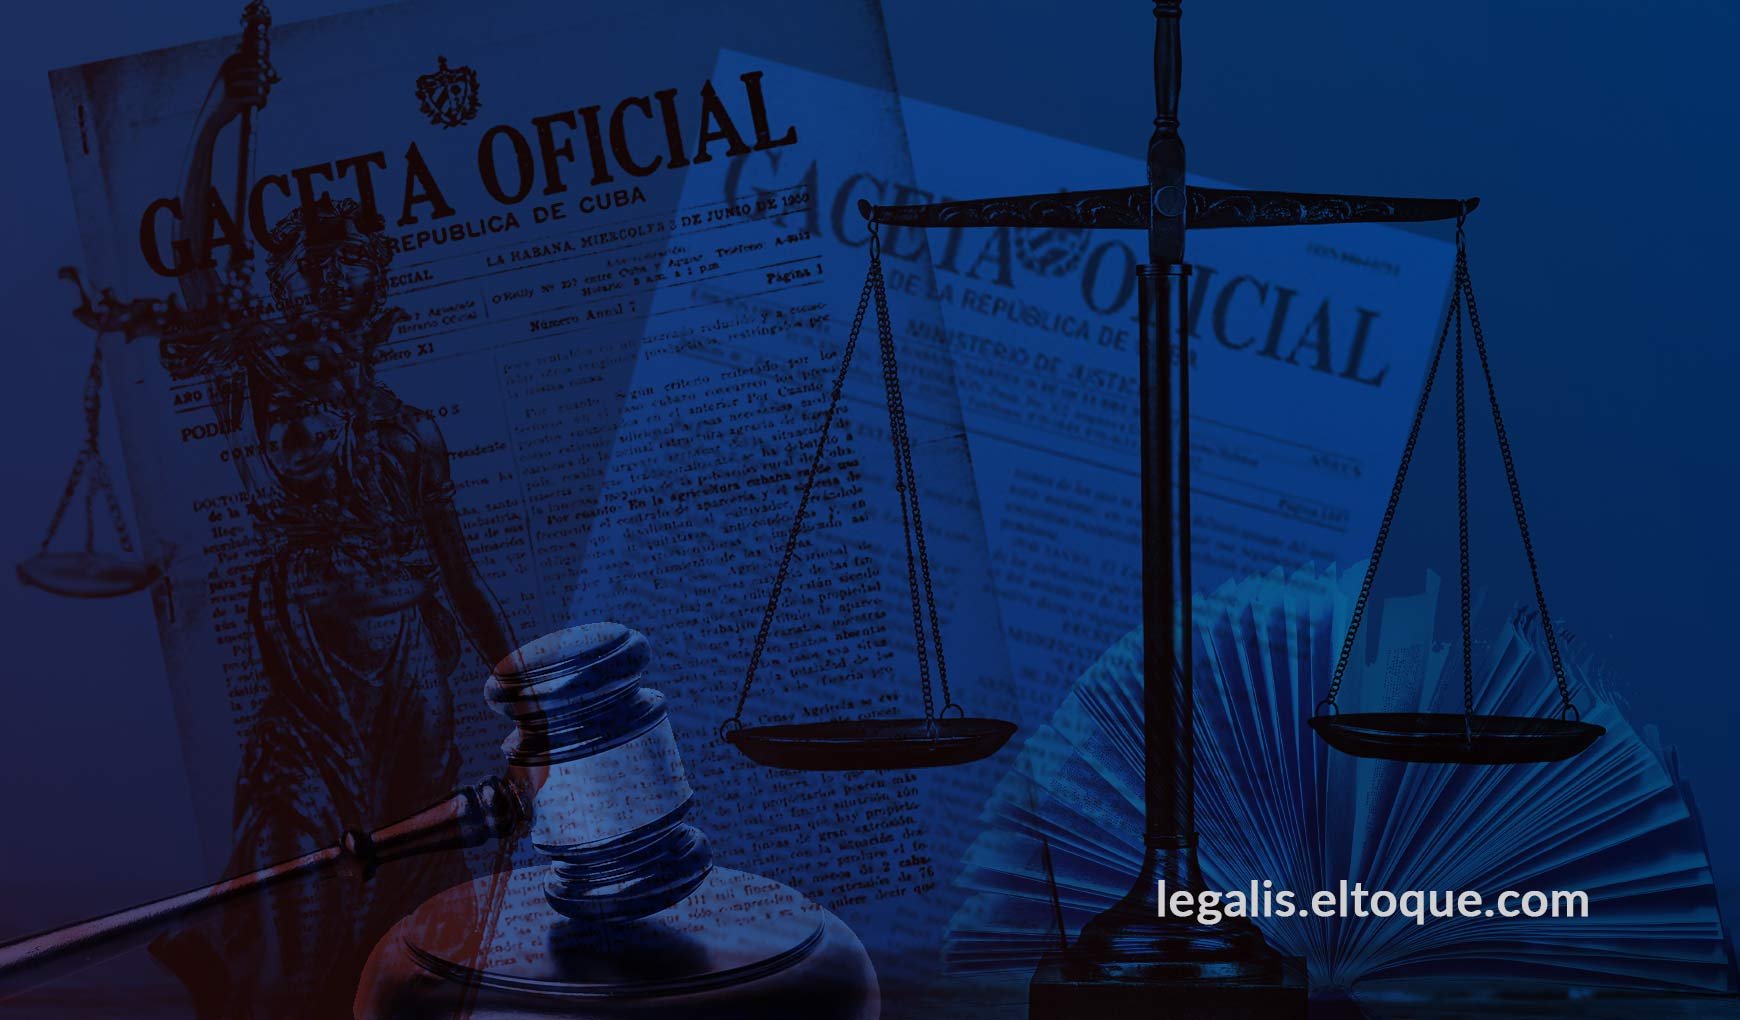 Legalis, nuevo servicio de El Toque para acercar el Derecho a la ciudadanía